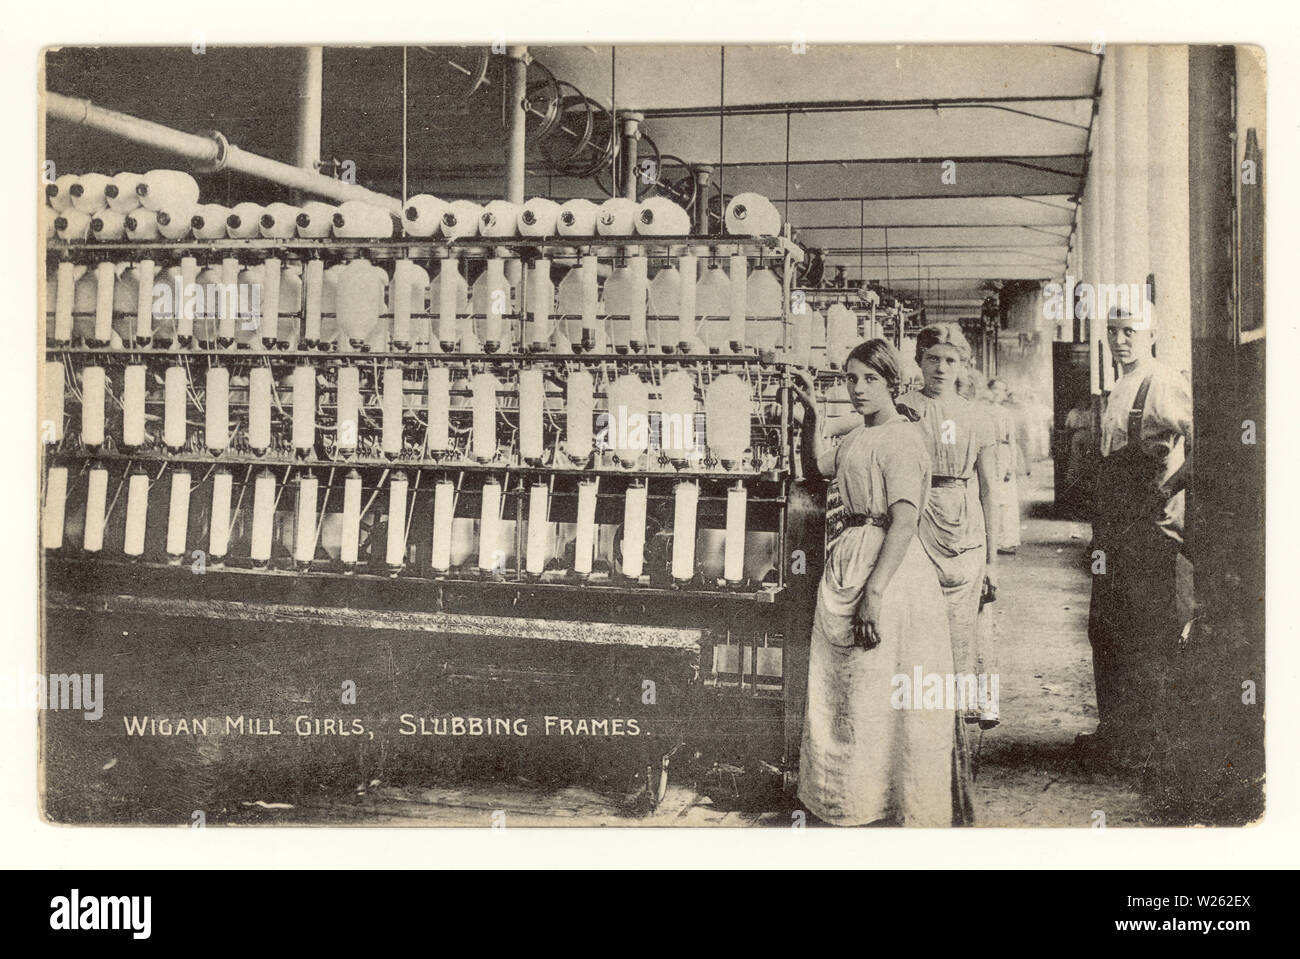 Carte postale début imprimé à fond est 'Wigan Mill girls,slubbing frames', avec surveillance / contremaître debout à côté d'images slubbing - une machine utilisée pour redresser les fibres en coton avant de tourner "Lancashire filles', vers 1910, Wigan, Greater Manchester, Royaume-Uni Banque D'Images